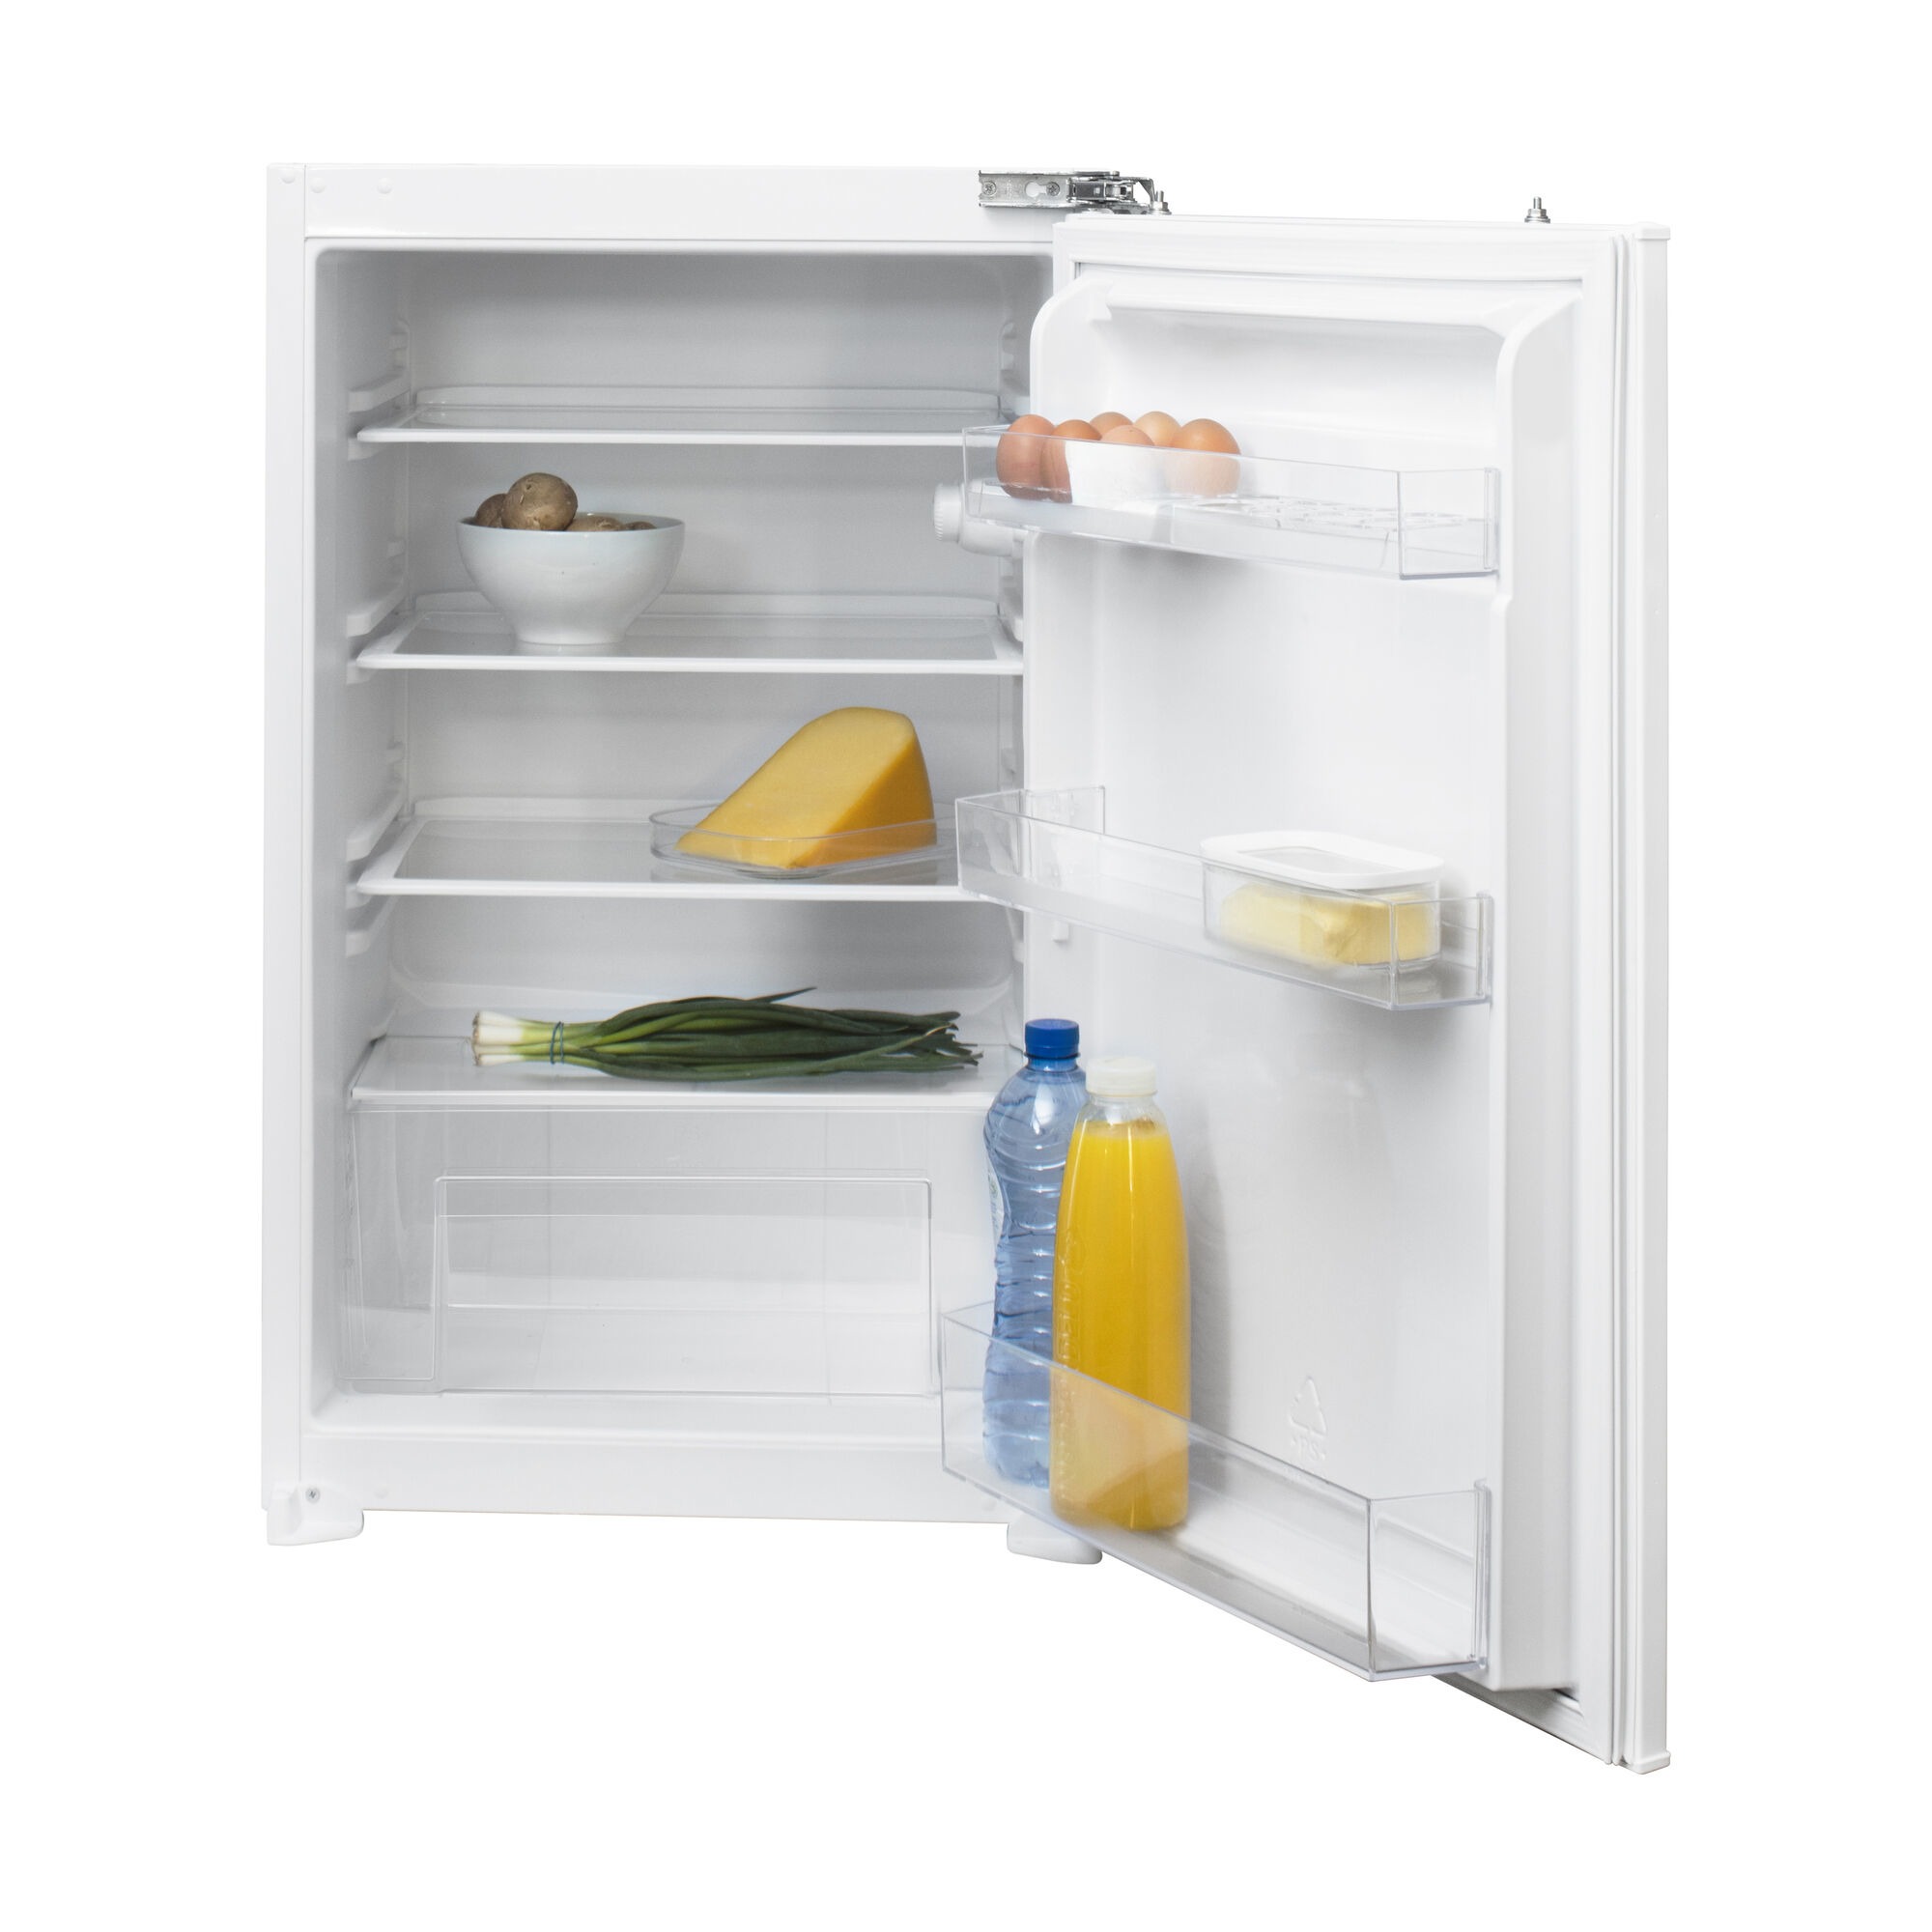 Inventum IKK0881D Inbouw koelkast zonder vriesvak Wit online kopen